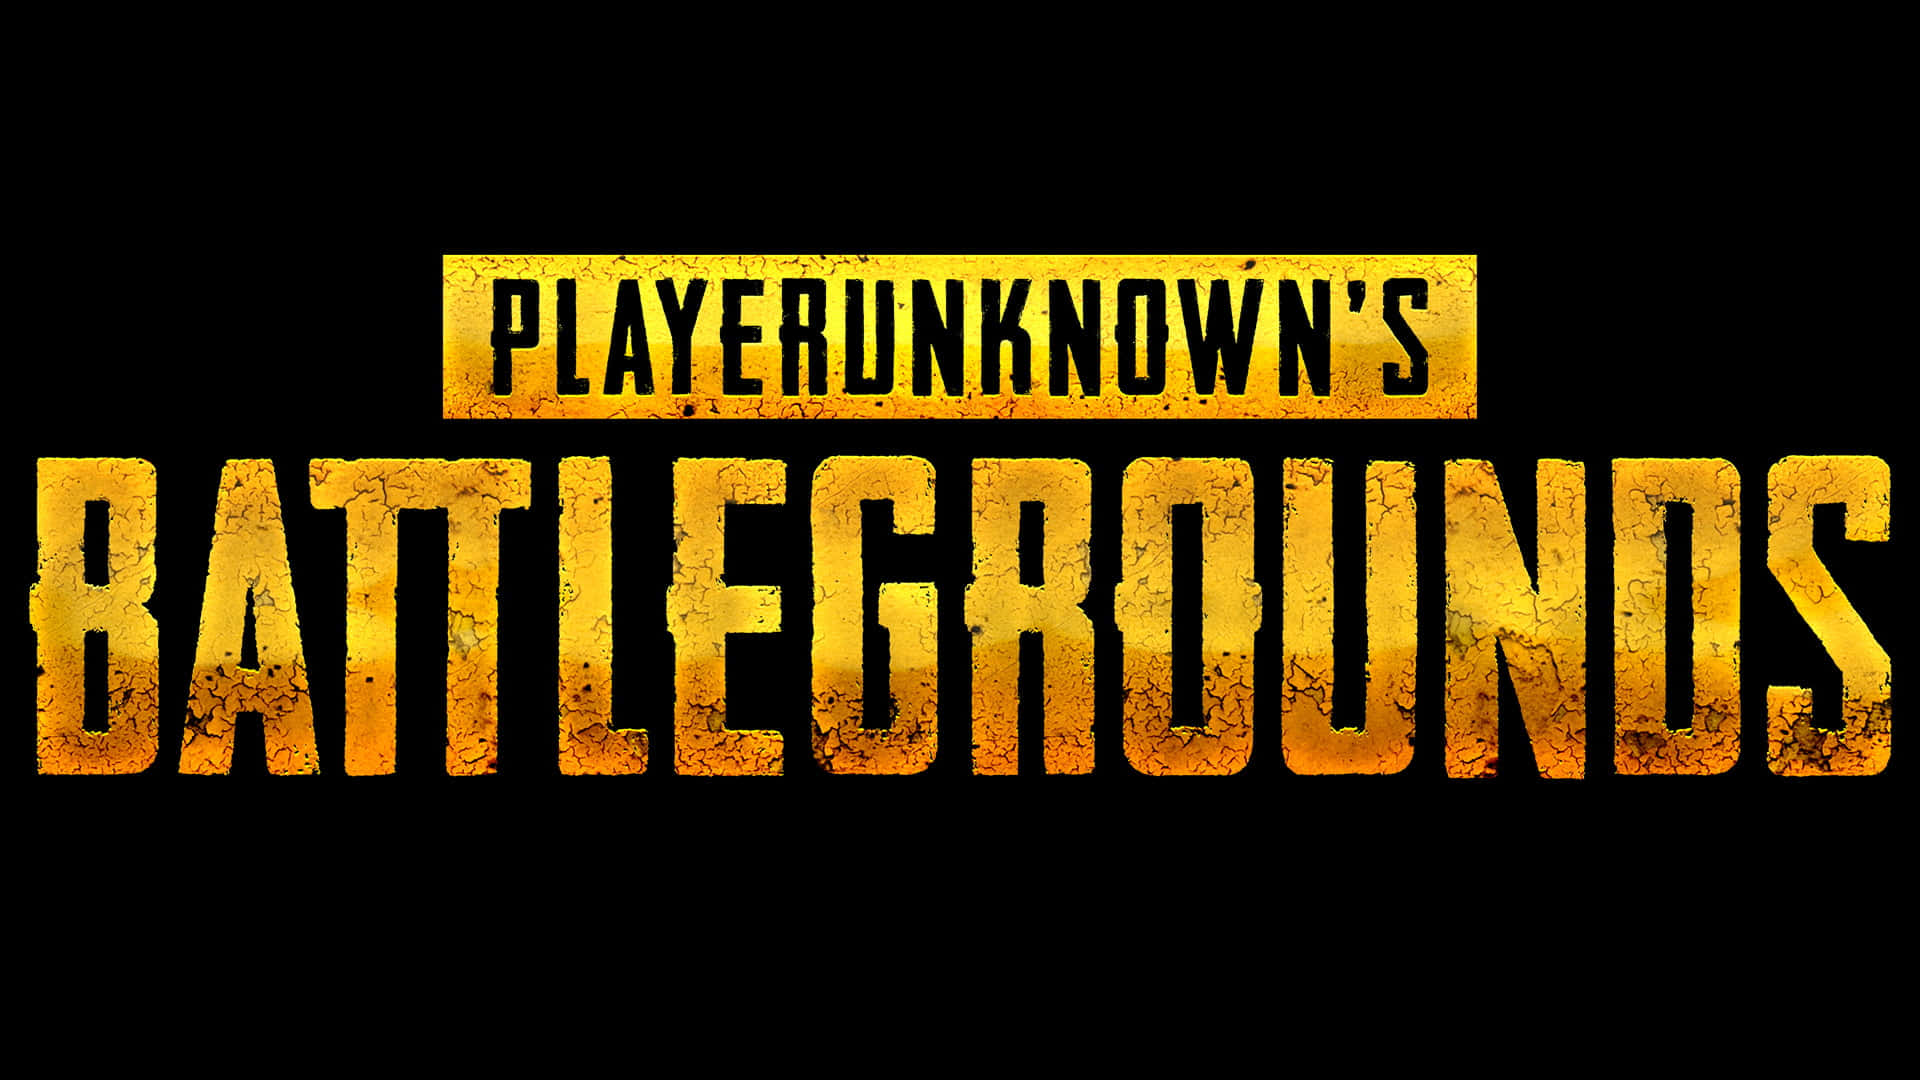 Logode Playerunknown's Battlegrounds